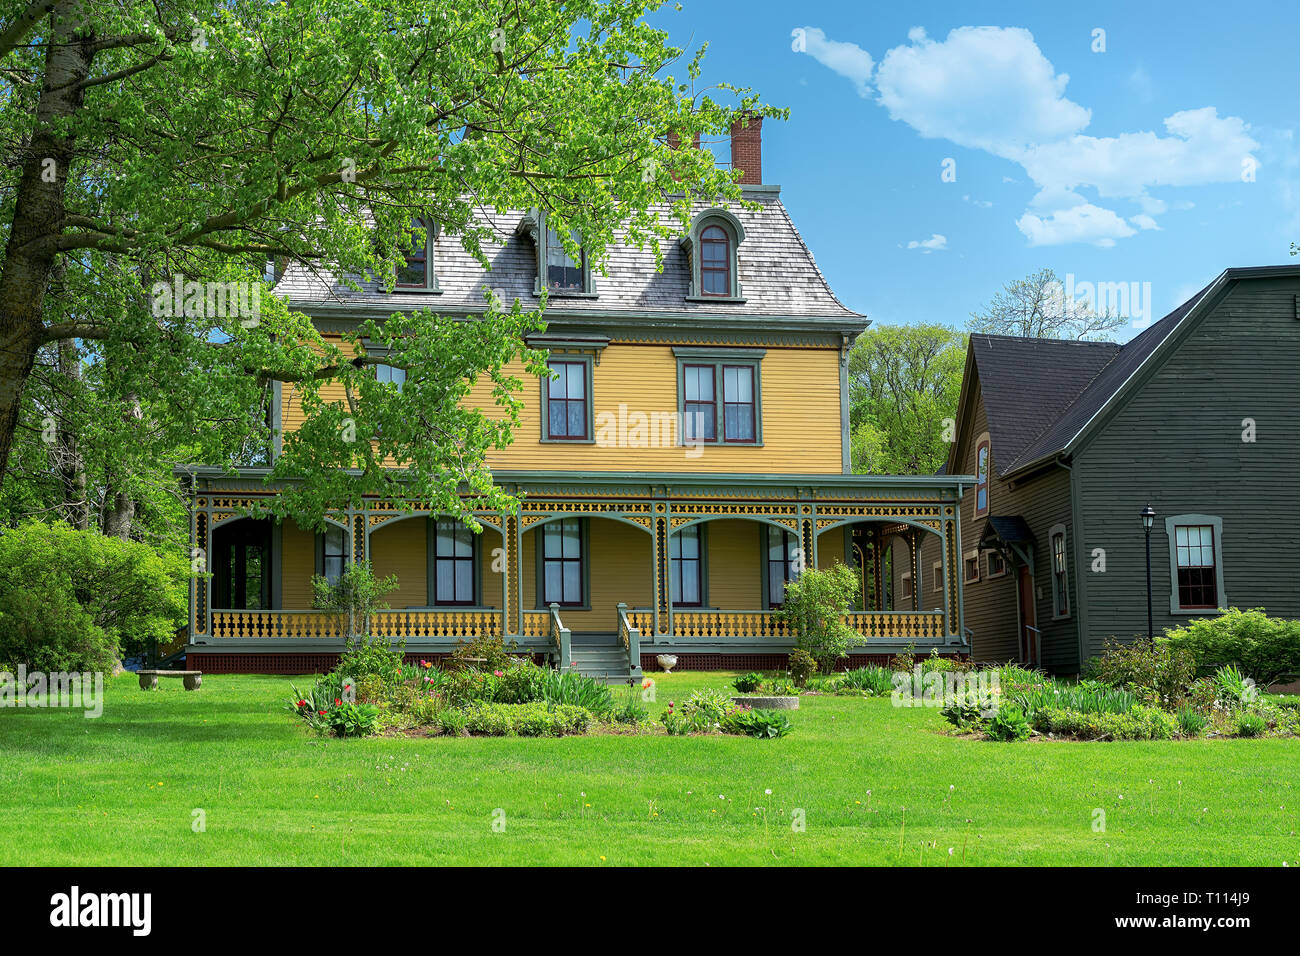 Beaconsfield Historic House ist in Charlottetown, Prince Edward Island, Kanada. Dieses schöne viktorianische Haus wurde in 1877 gebaut. Stockfoto